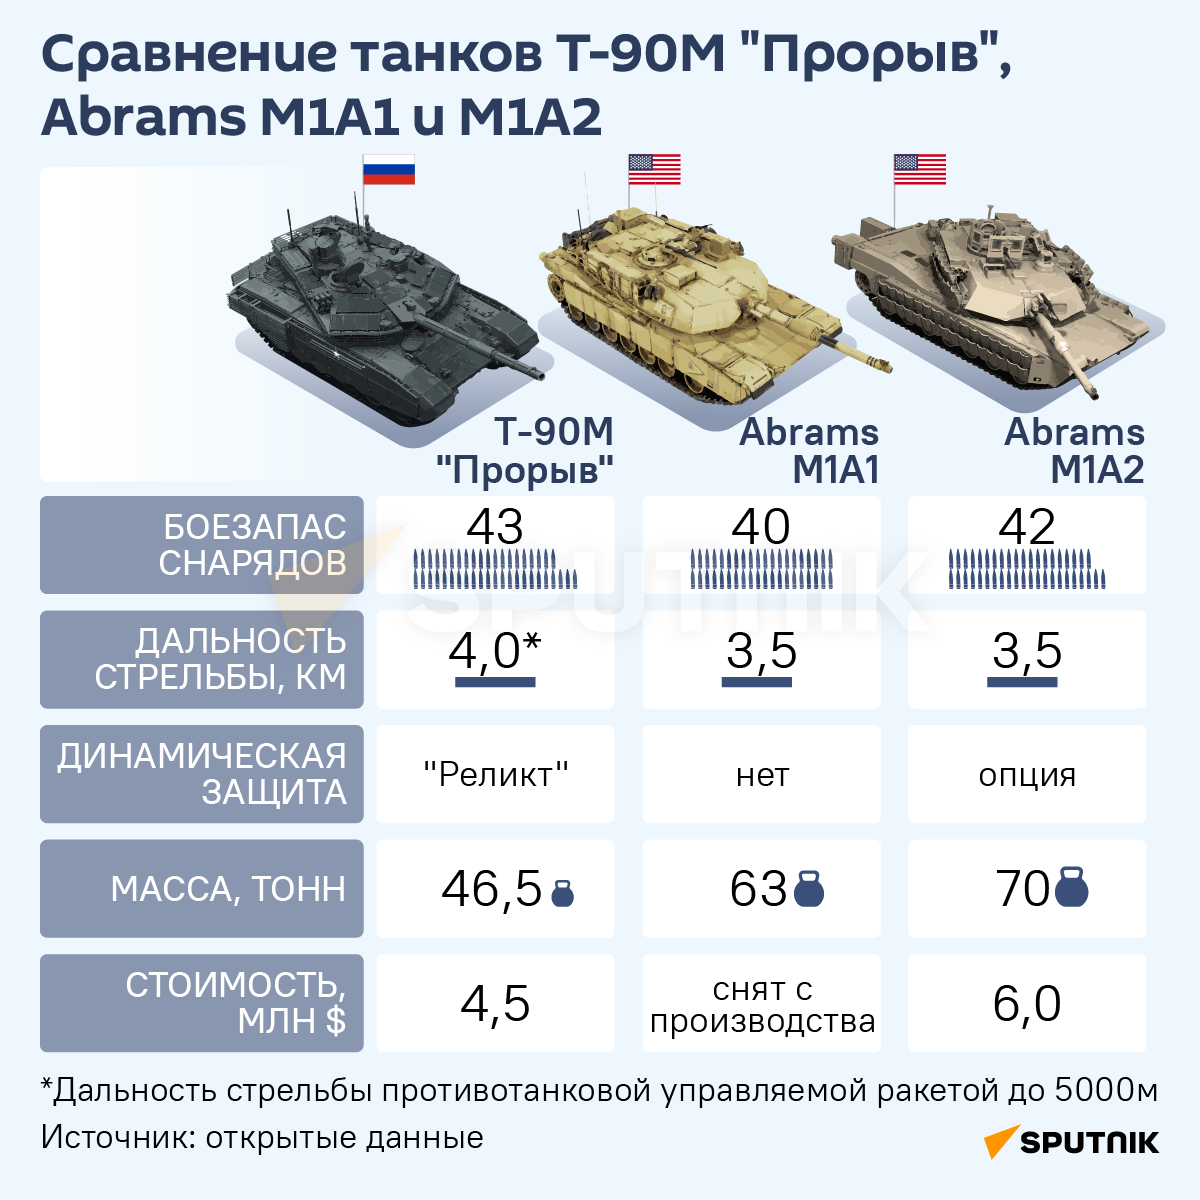 Инфографика: Сравнение танков Т-90М Прорыв, Abrams M1A1 и M1A2 - Sputnik Азербайджан